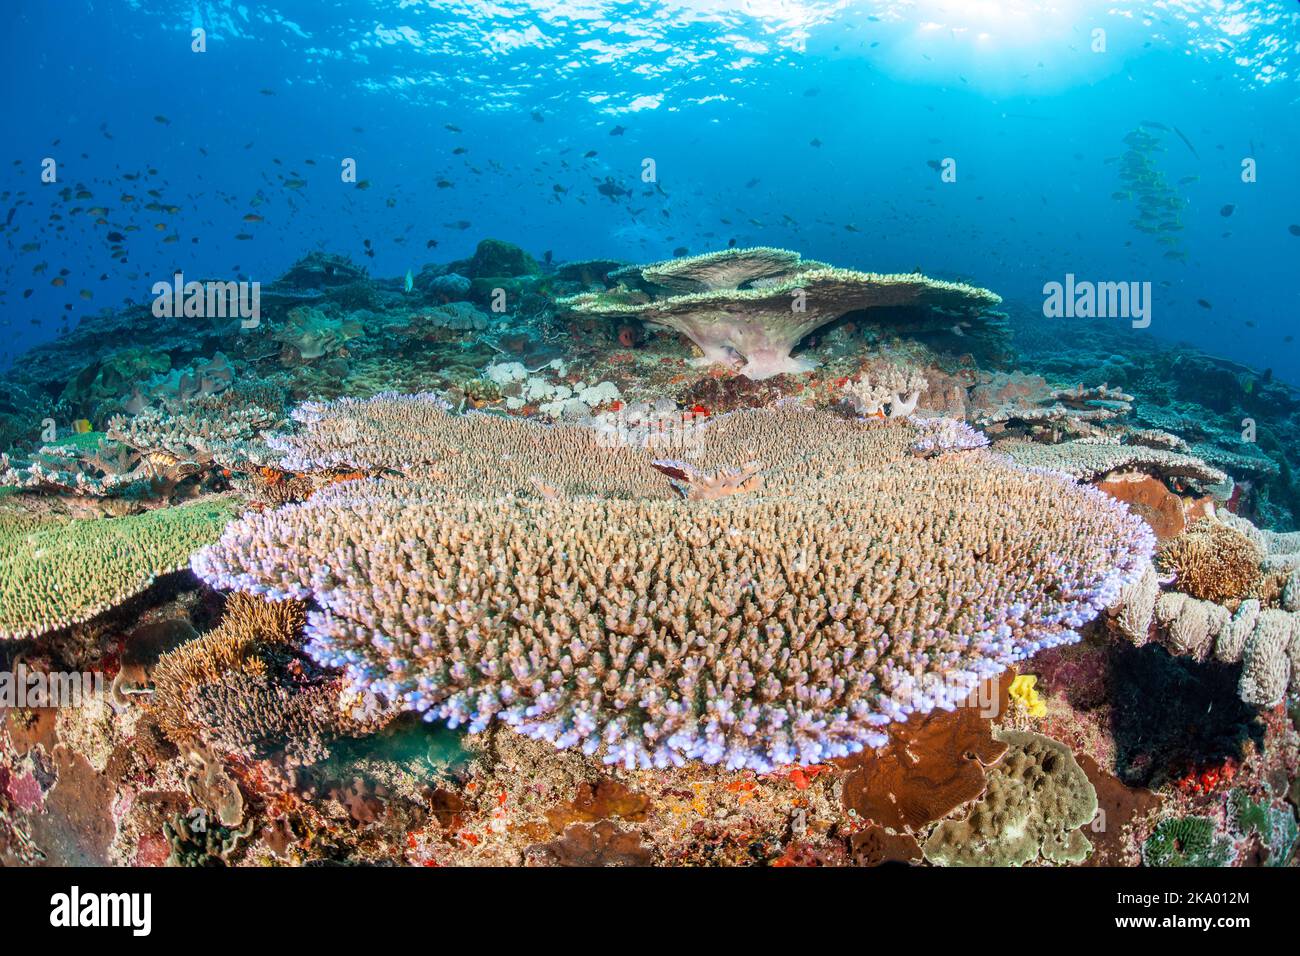 Corallo tavolo con la scuola di anthias e vari pesci della barriera corallina, dominano questa scena subacquea, Crystal Bay, Nusa Penida, Bali Island, Indonesia, Paci Foto Stock